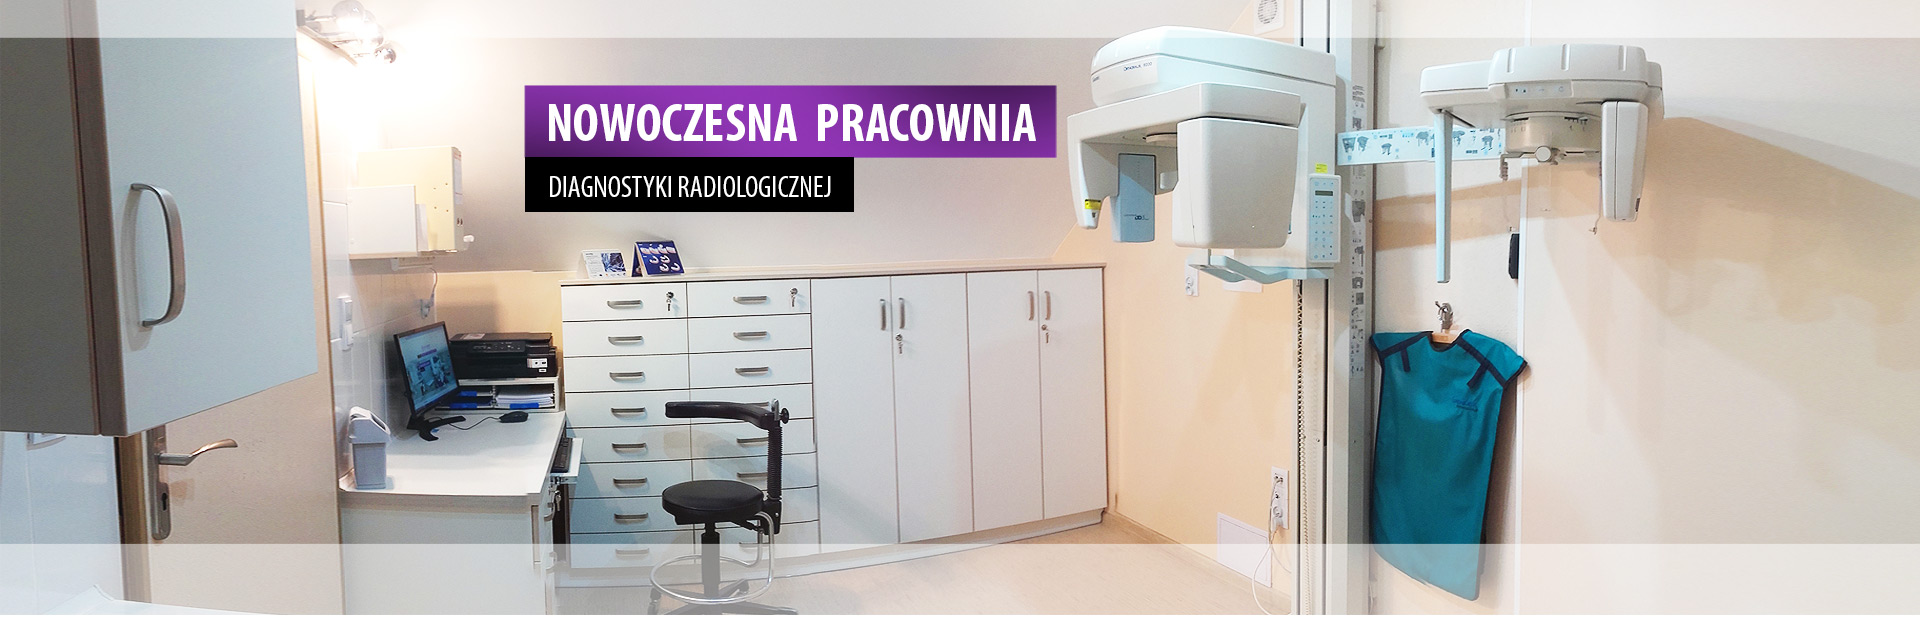 Panorama pracowni diagnostyki radiologicznej